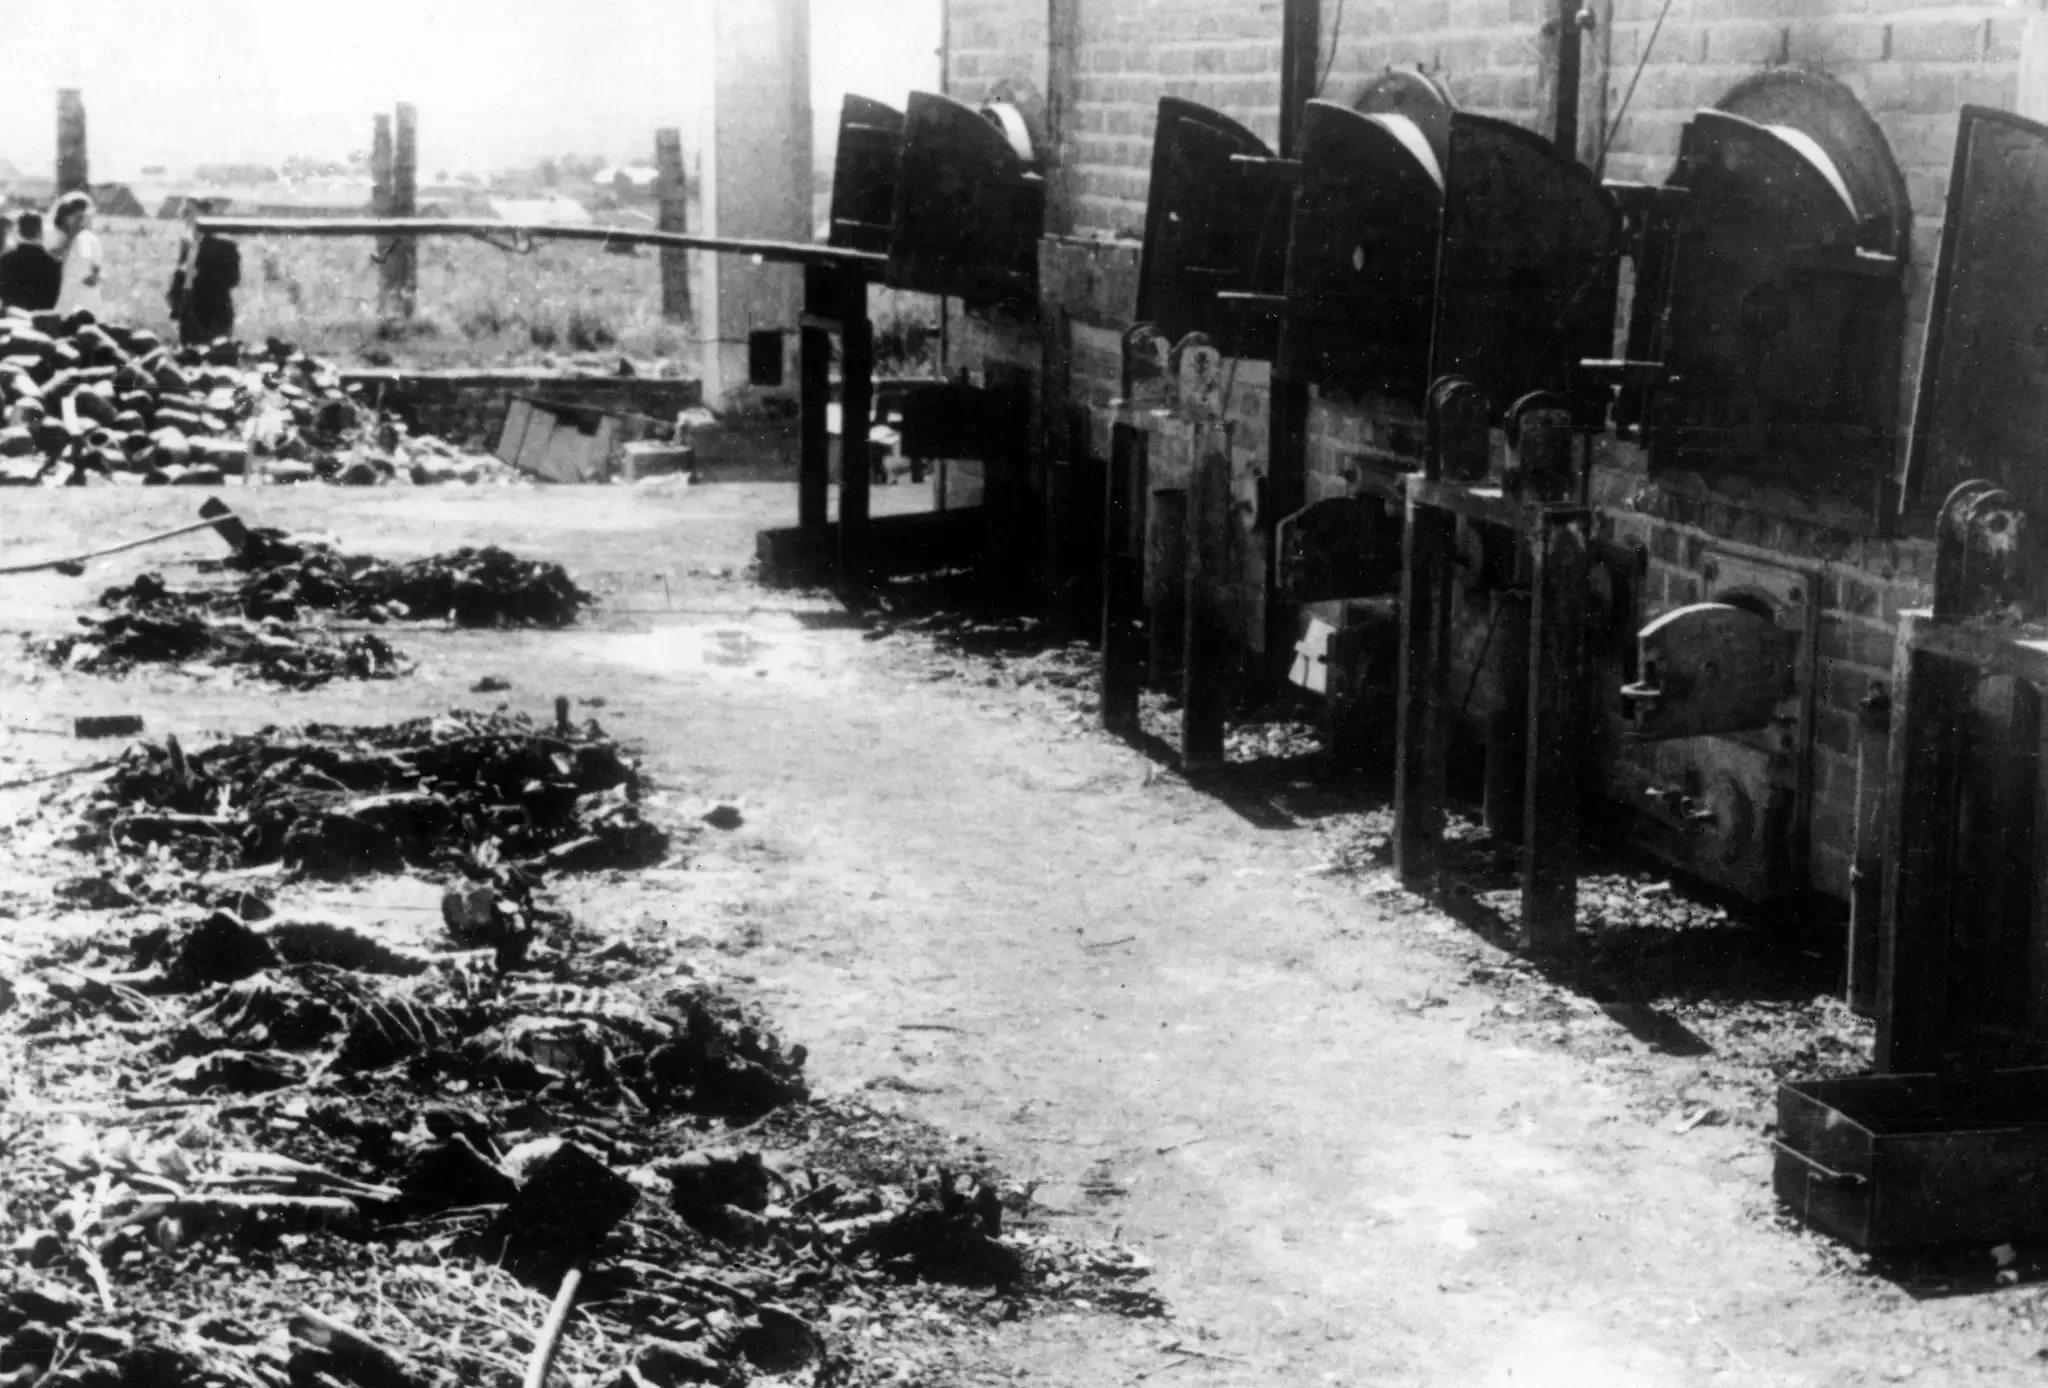 Sejarah 27 Januari: Ditemukannya Kamp Auschwitz, Tempat 1,1 Juta Orang Dibantai Nazi